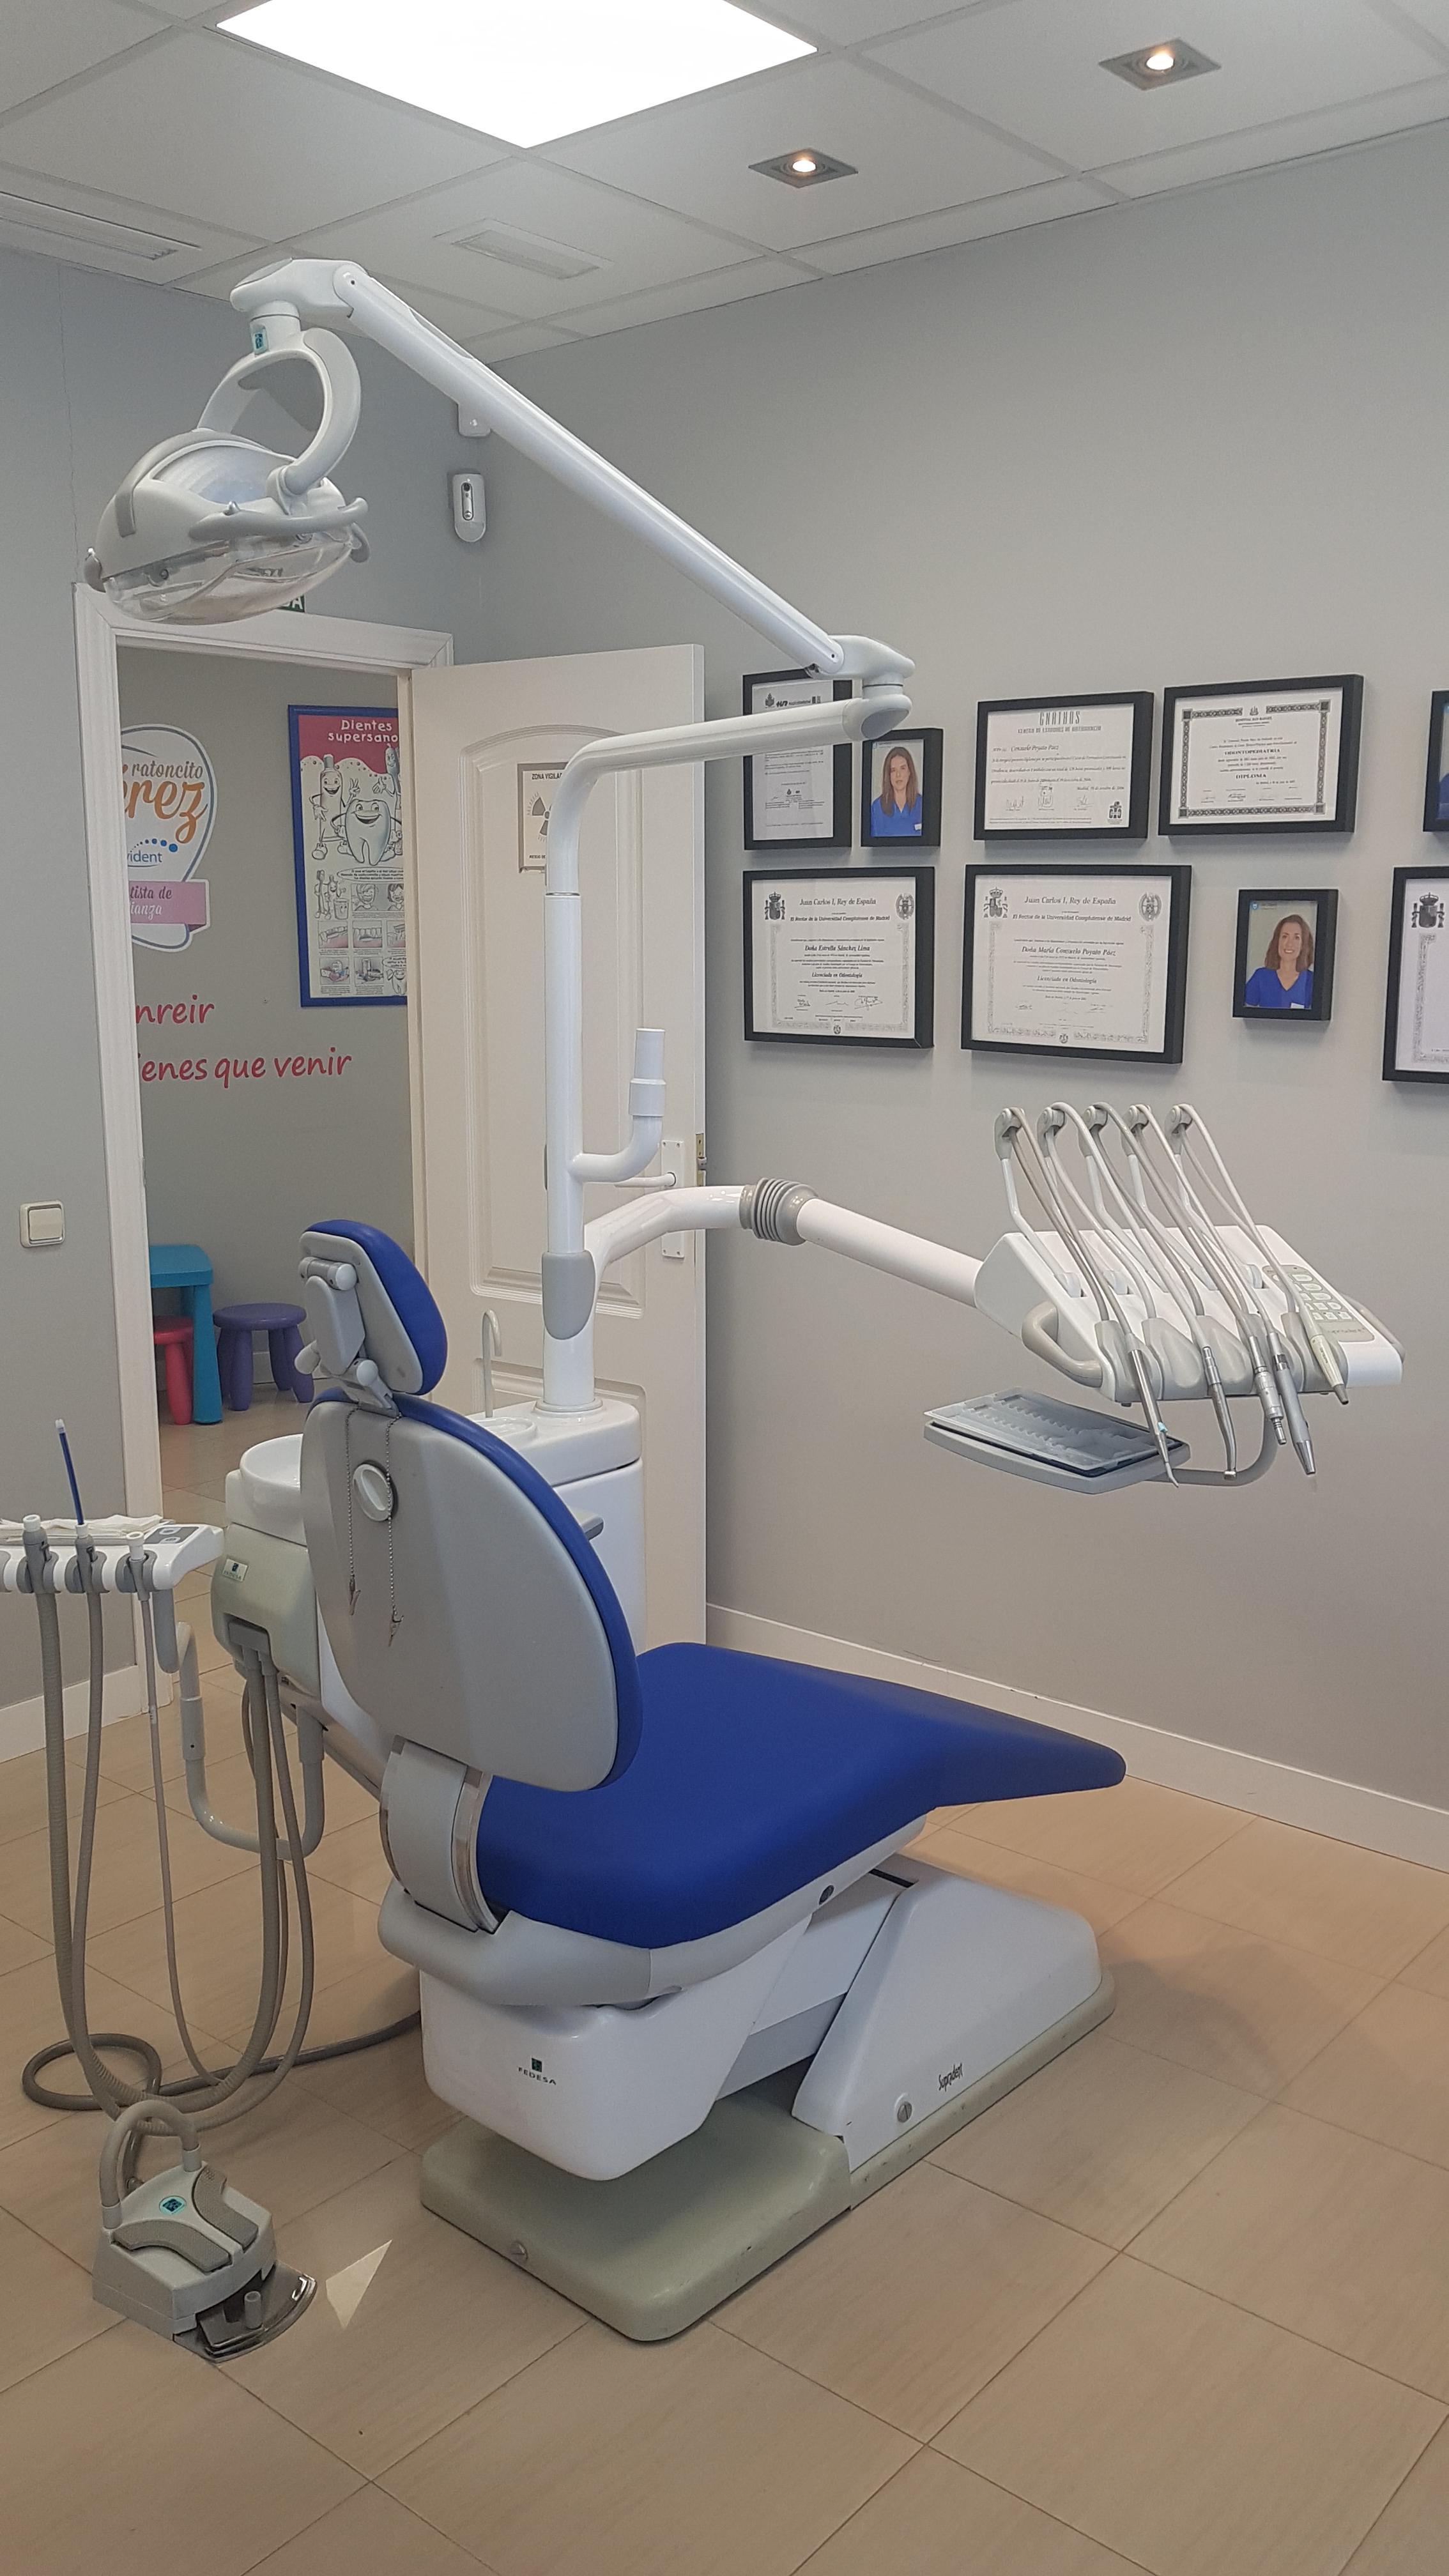 Images Clínica Dental Jovident